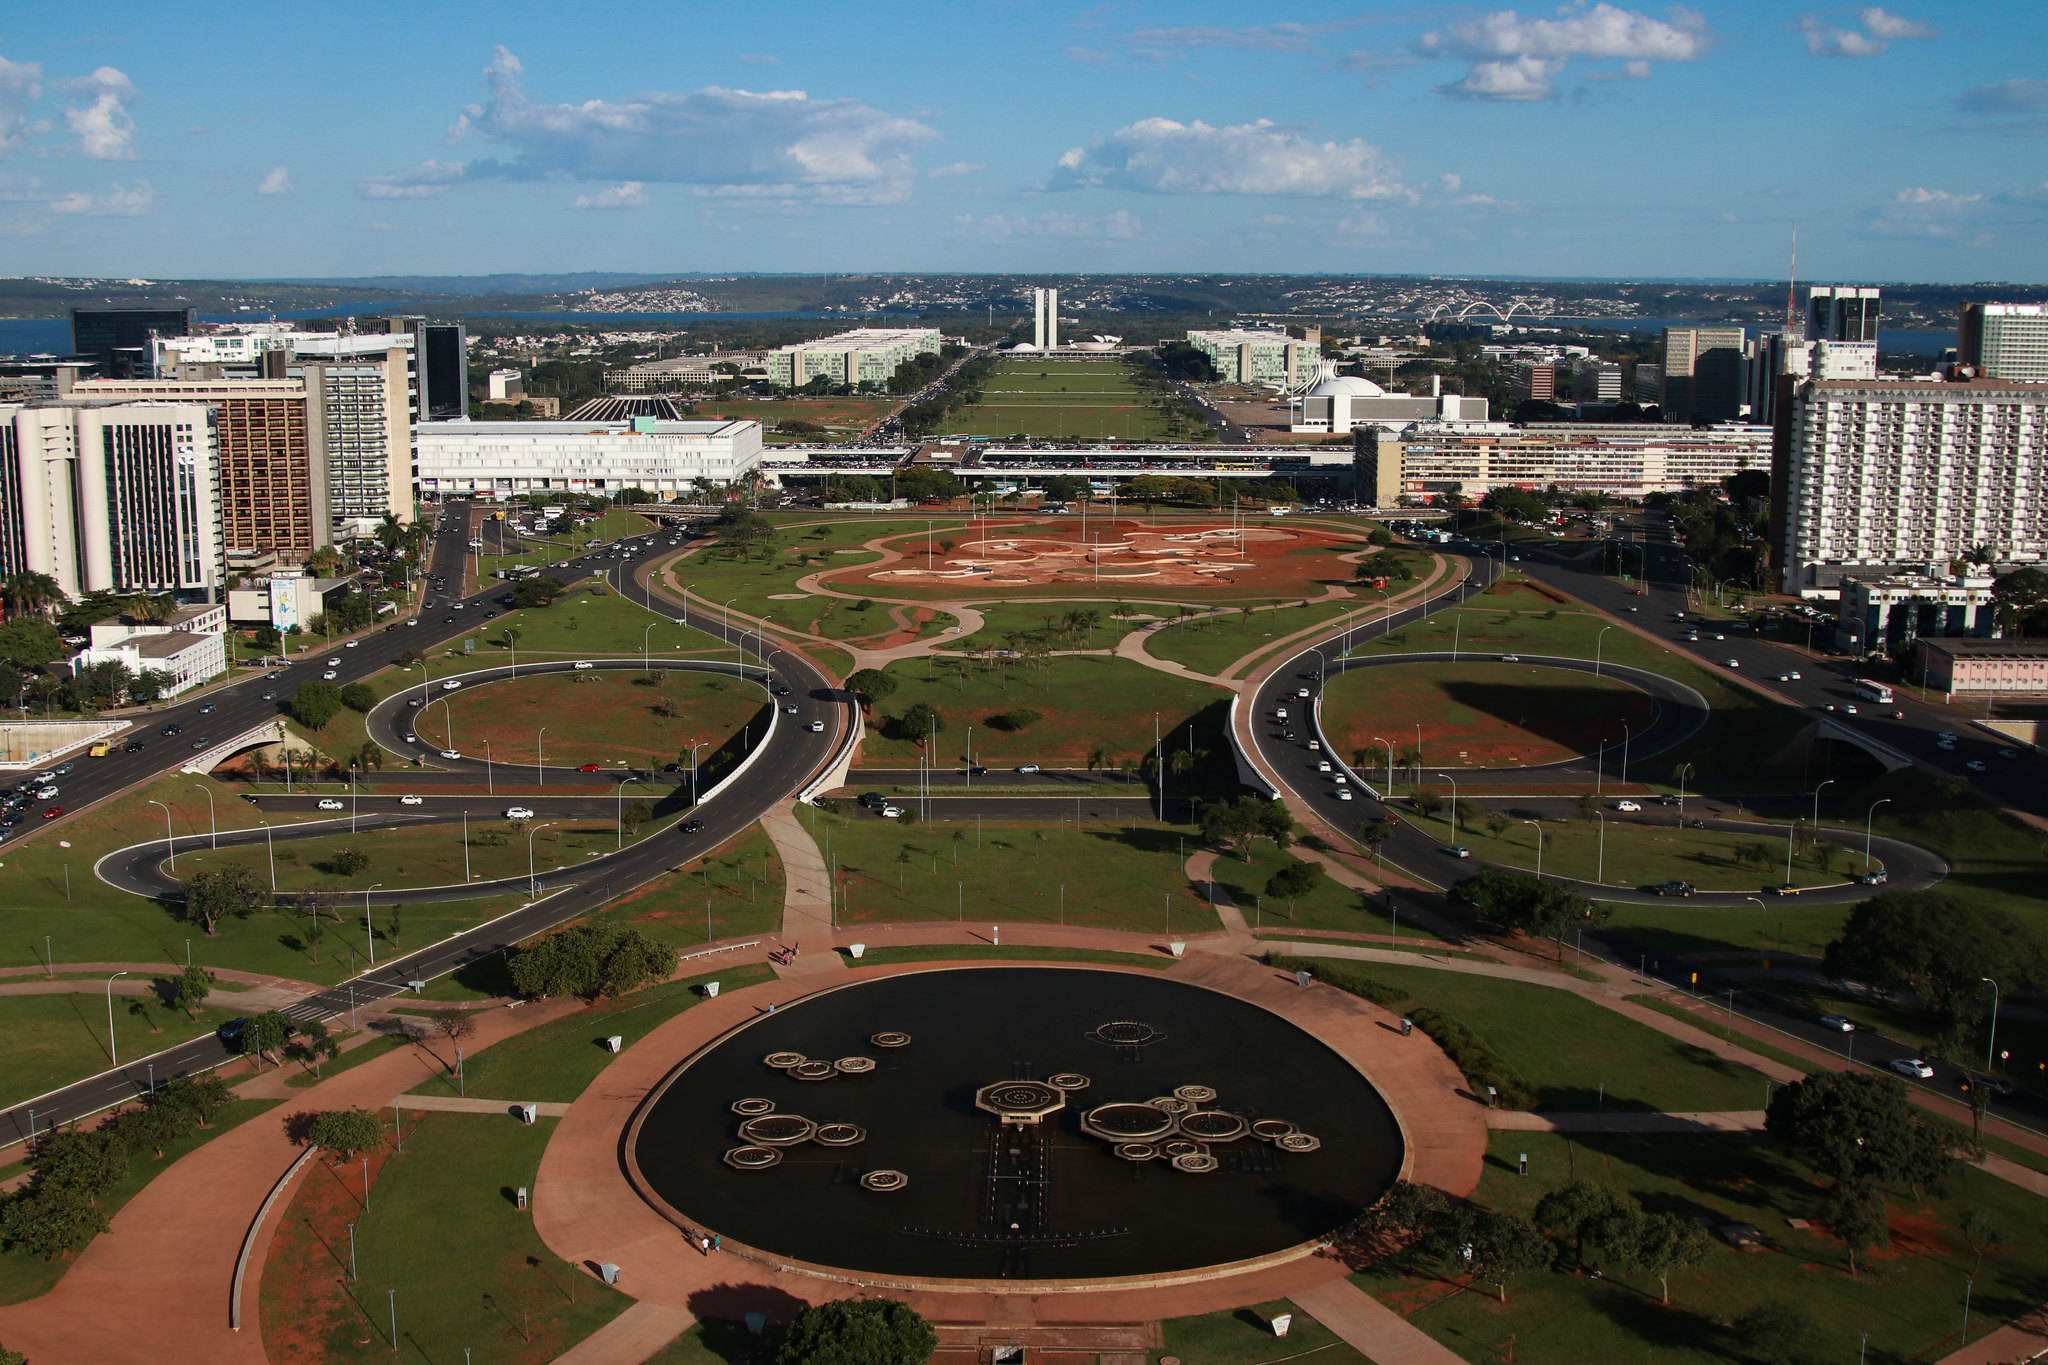 Vista aérea de Brasília, a cidade planejada mais conhecida do país, tem o plano piloto em formato de avião (Foto: Roberto Castro)